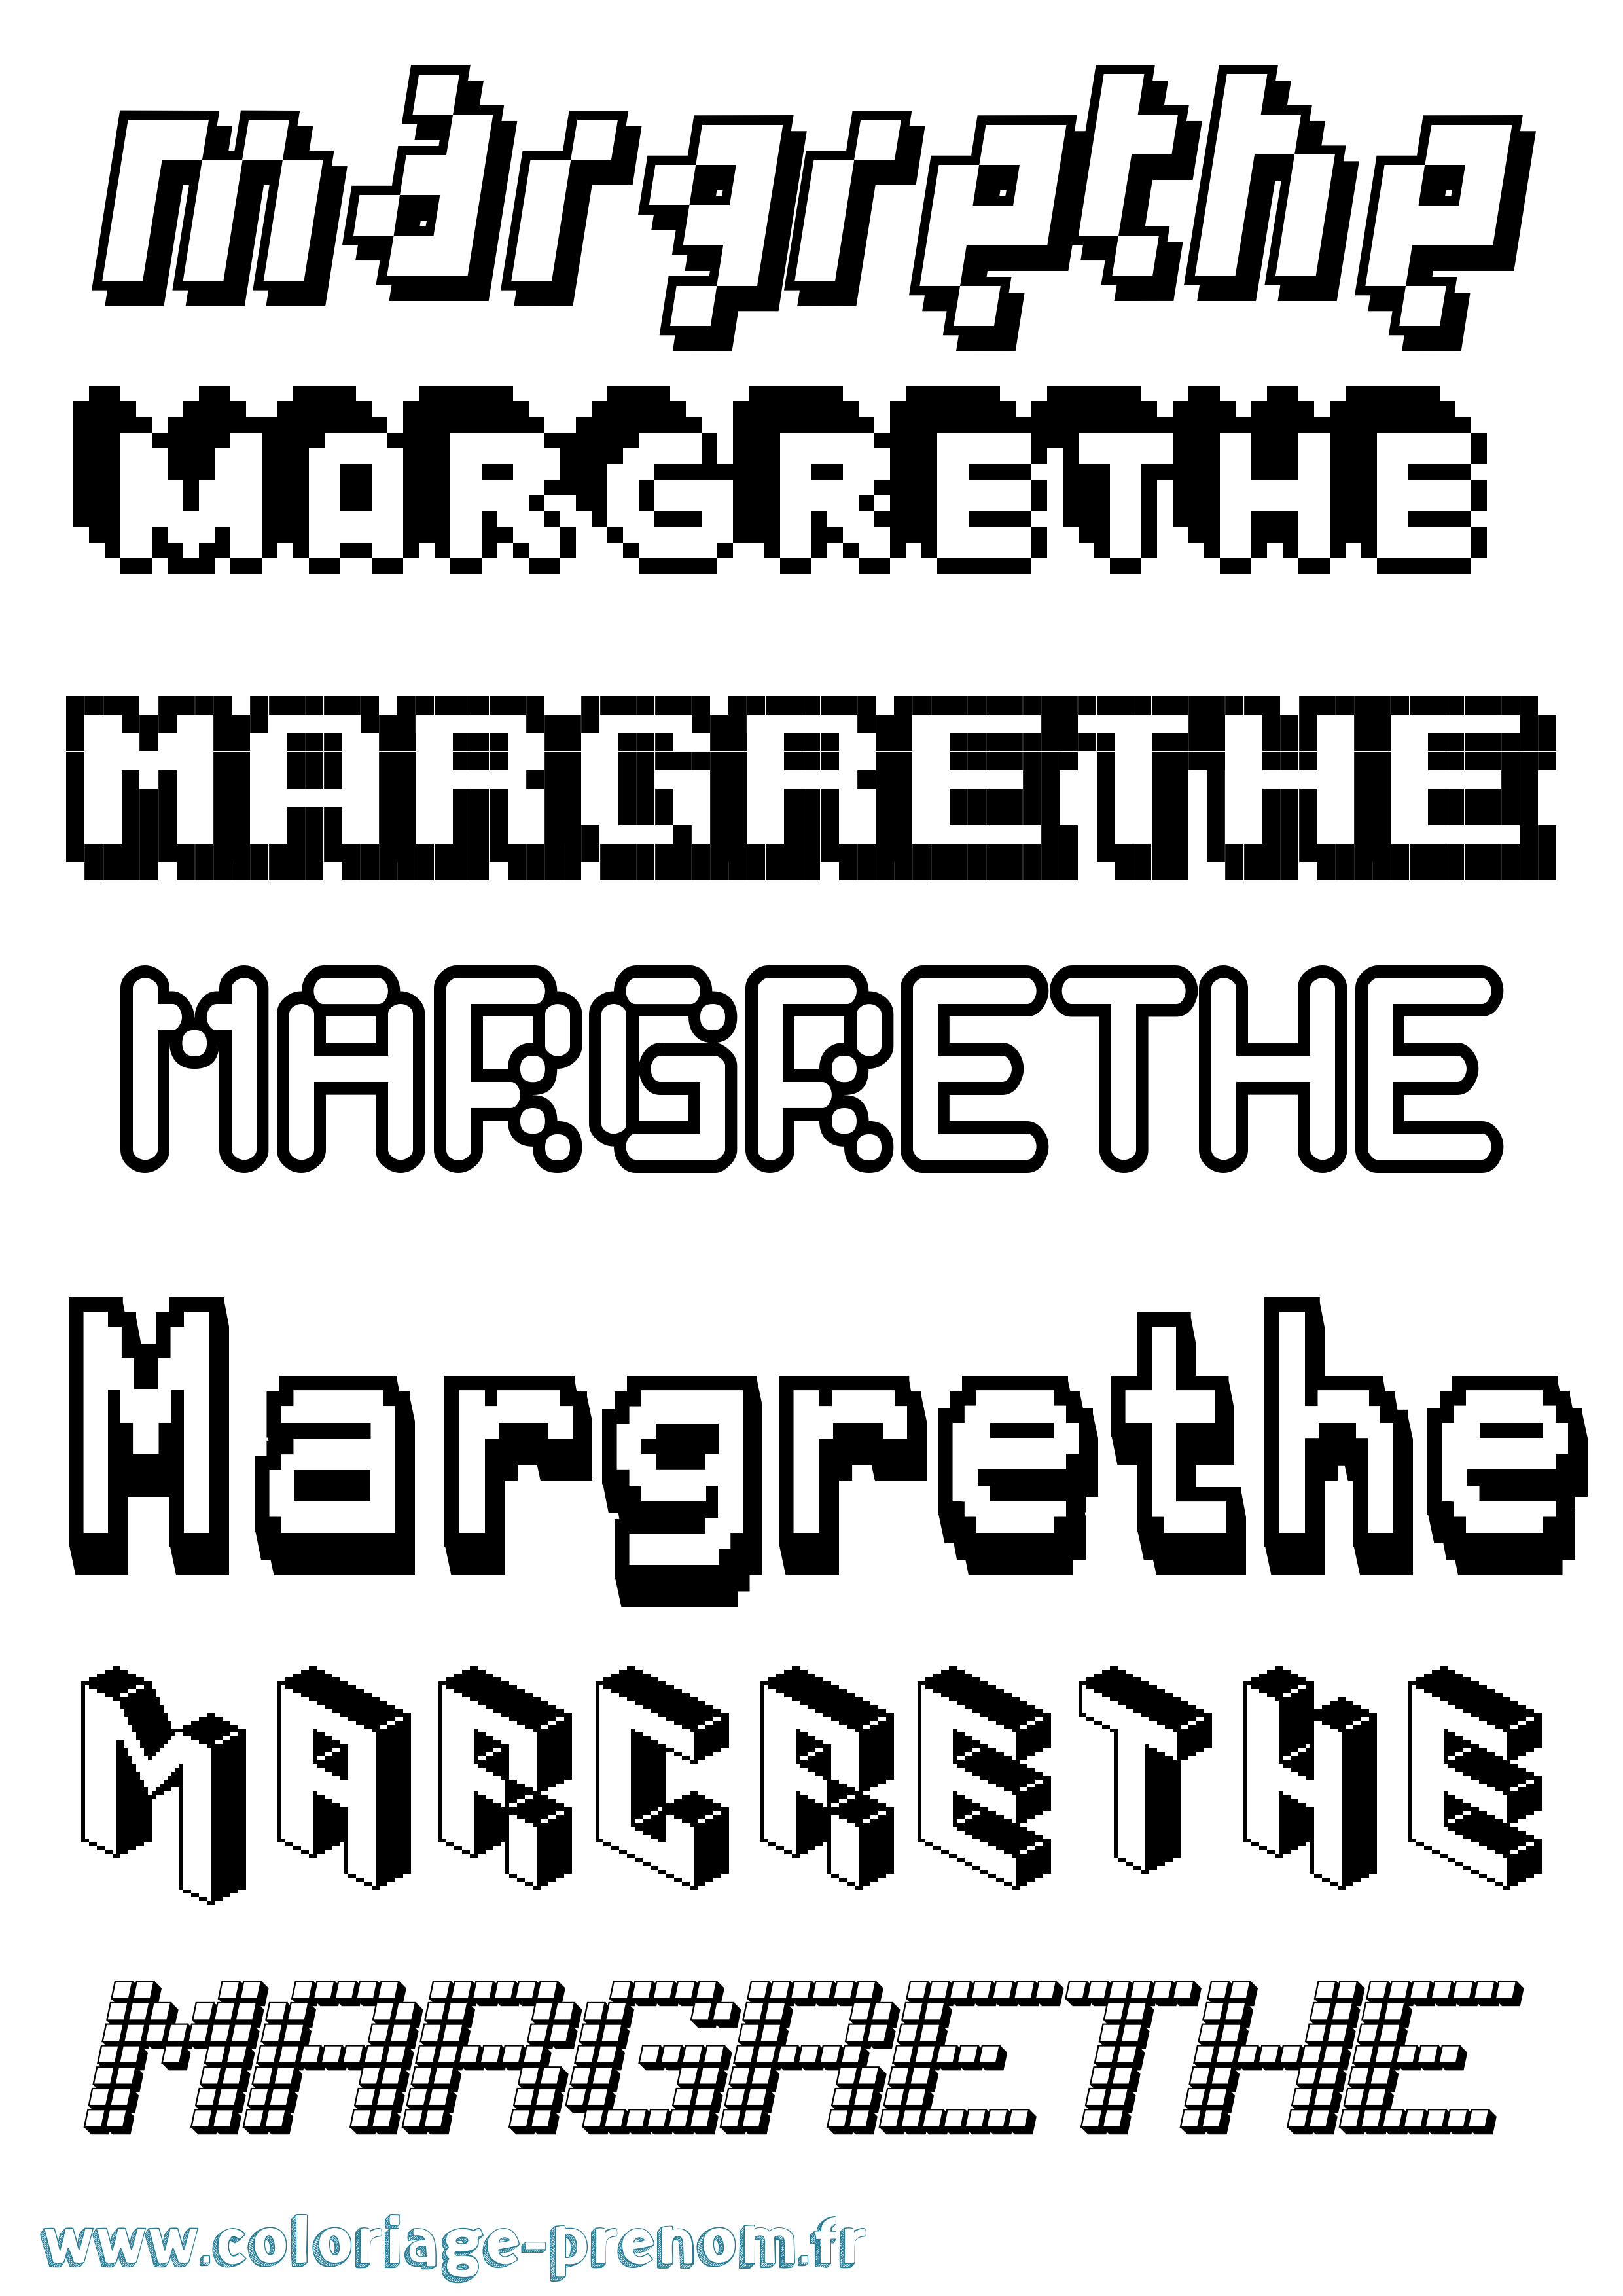 Coloriage prénom Margrethe Pixel